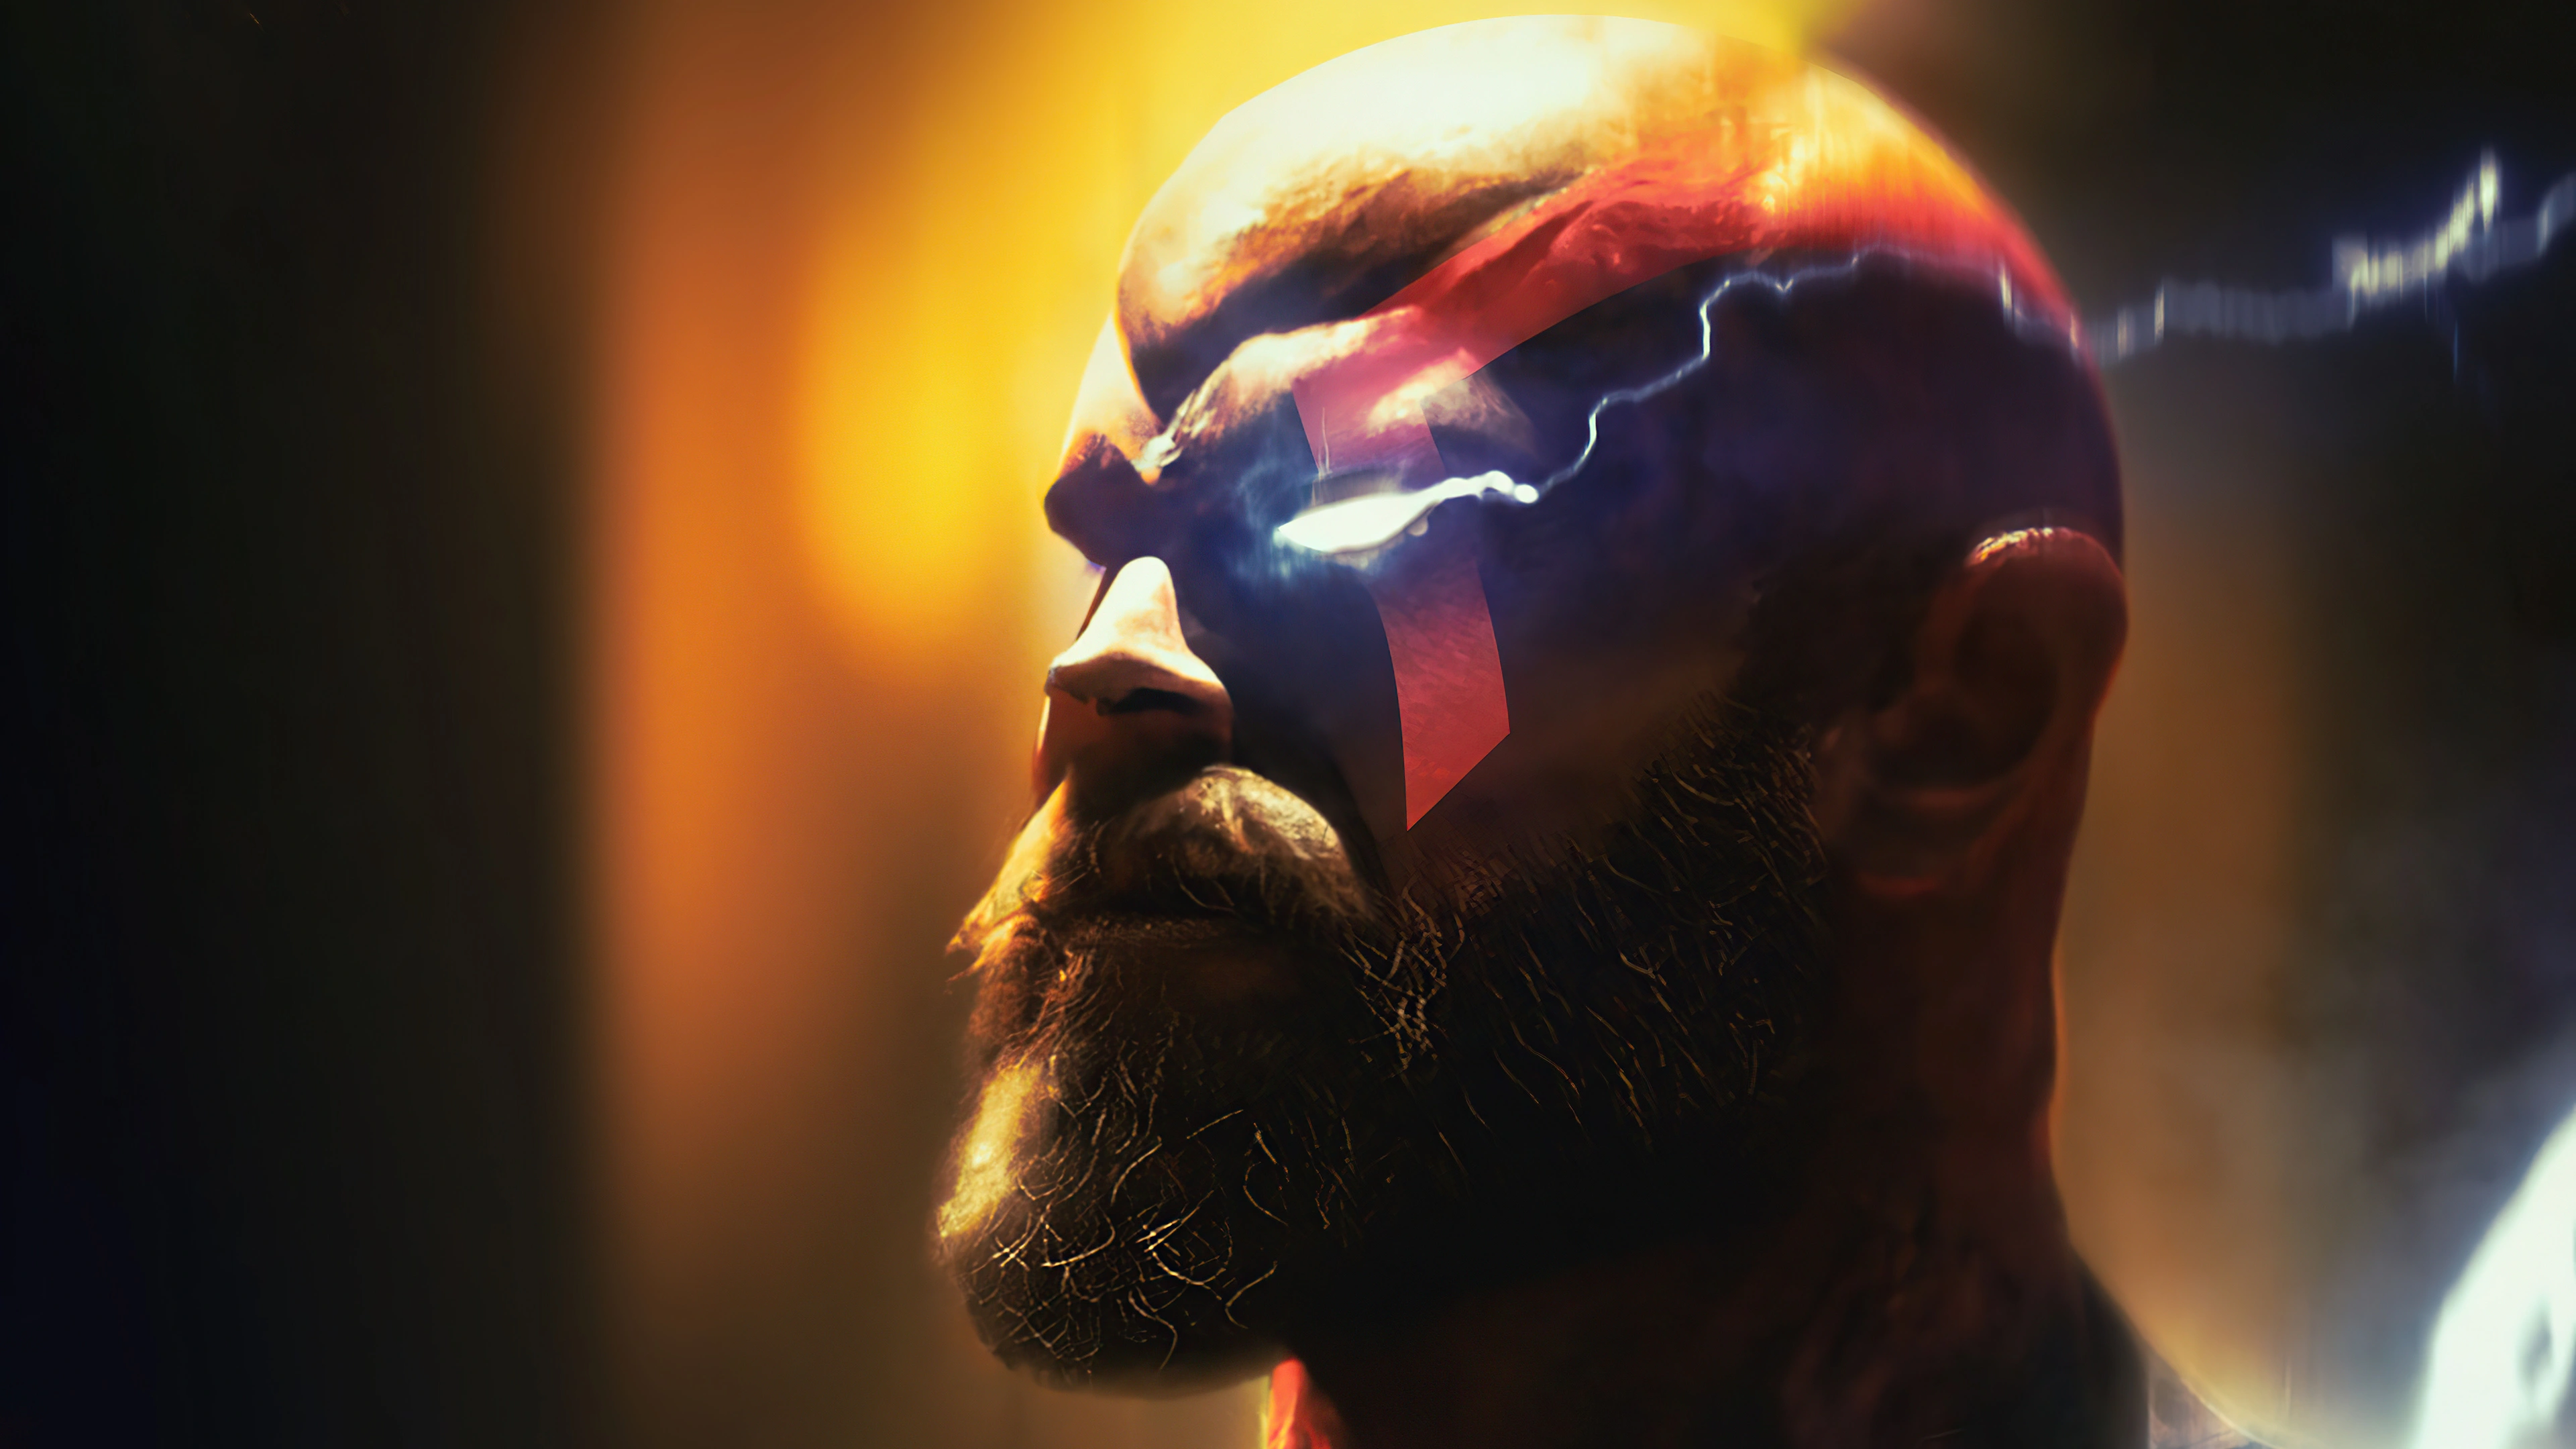 kratos killing gods 4q.jpg